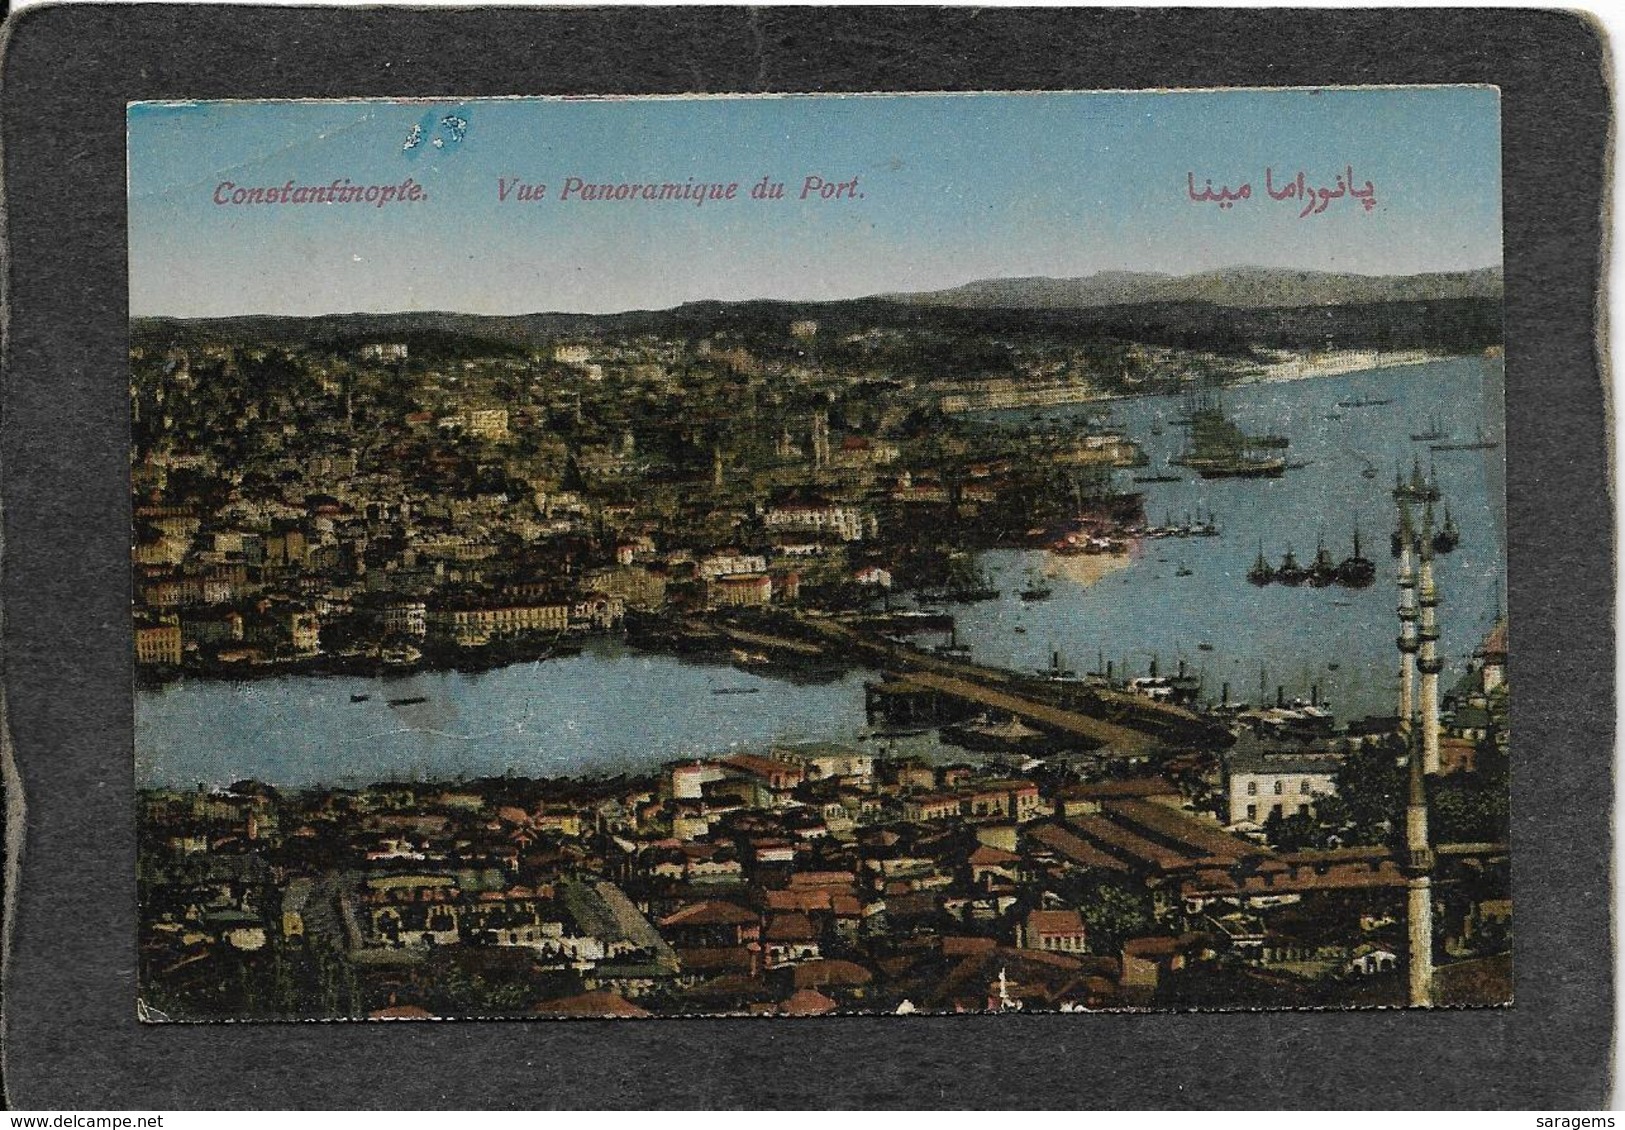 Constantinople-Vue Panoramique Du Port 1910s - Antique Postcard - Turchia